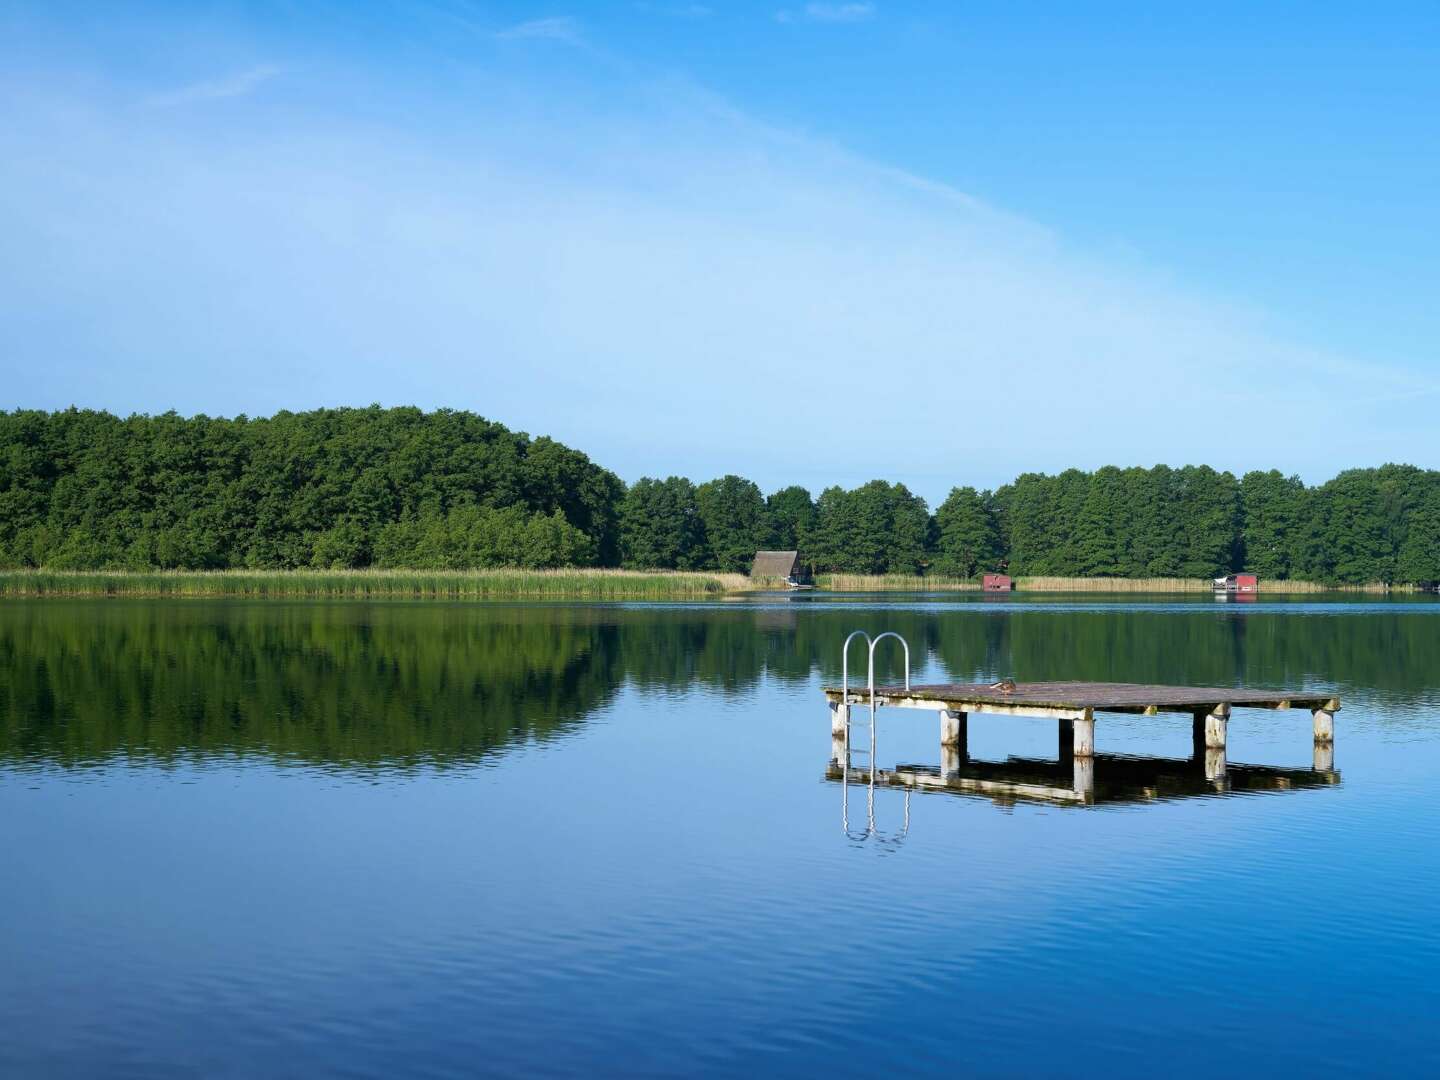 Entspannte Zeit am verträumten Mirower See inkl. Halbpension